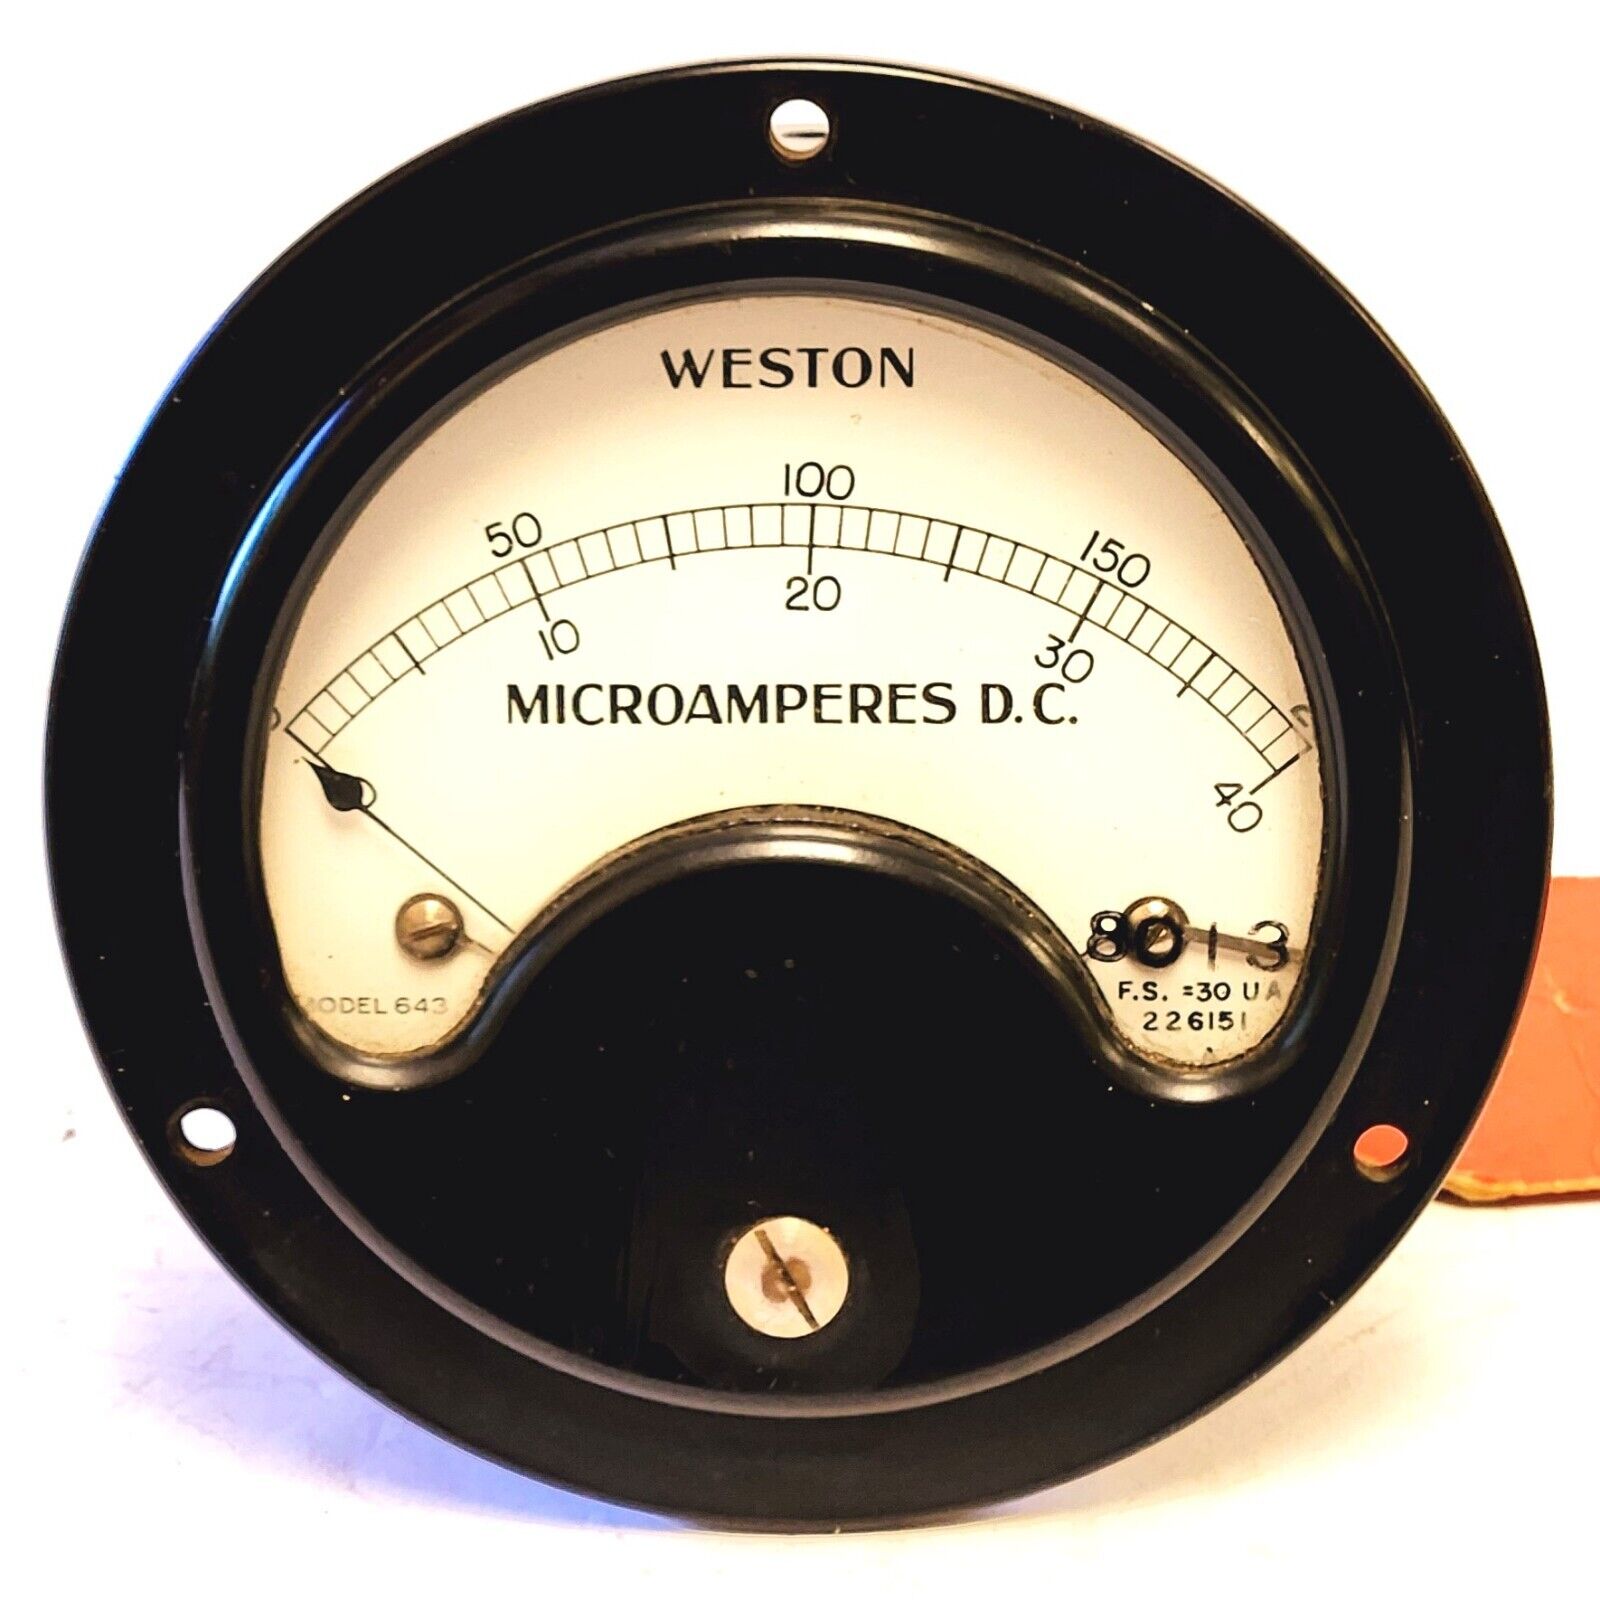 WESTON MODEL 643 MICROAMPERES D.C. 0-200, F.S.=30 UA SEALED METER